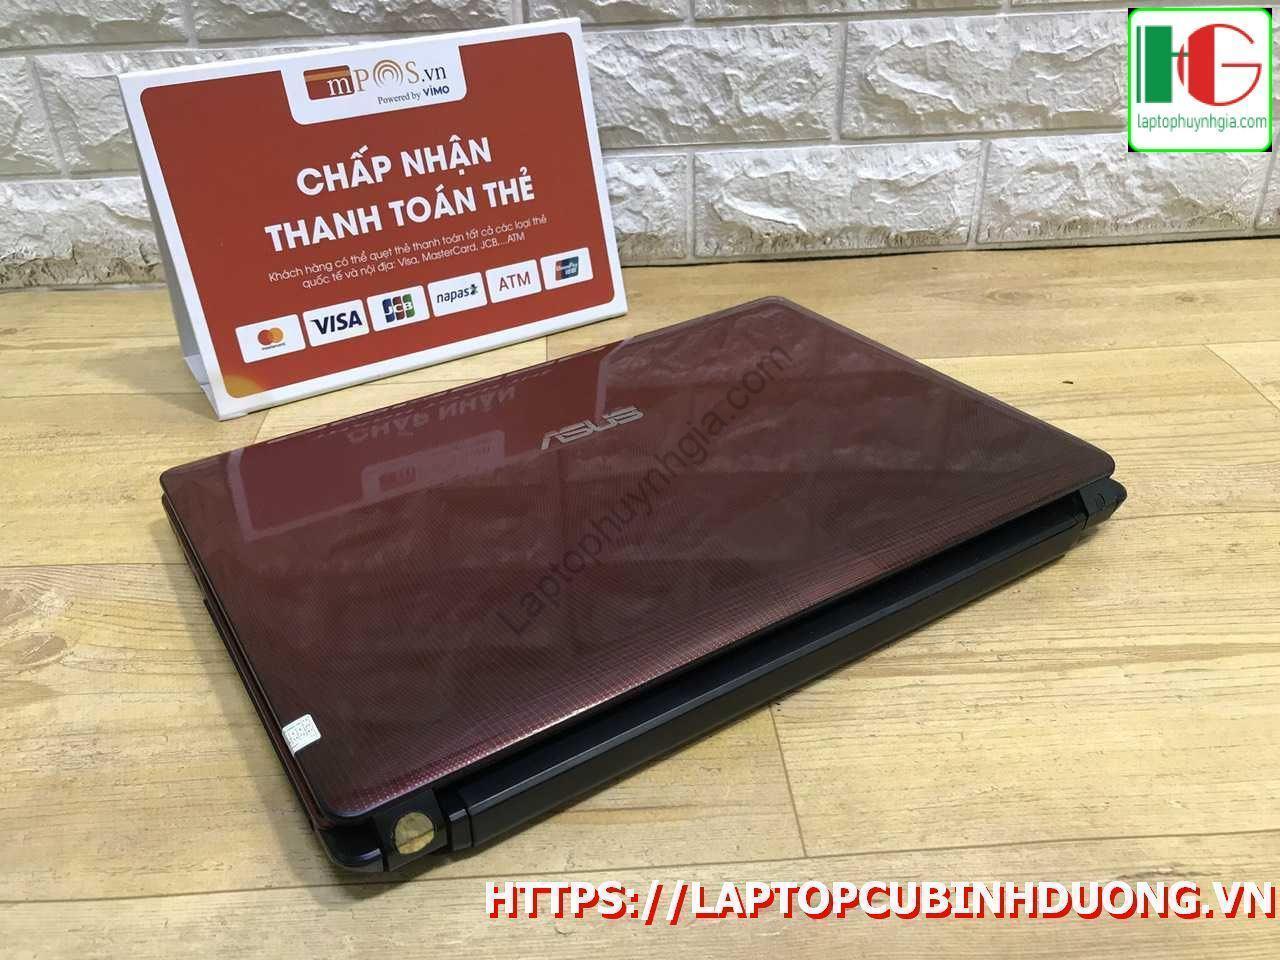 Laptop Asus K43j I3 2310m 3g 500g Laptopcubinhduong.vn 4 [kích Thước Gốc] Result